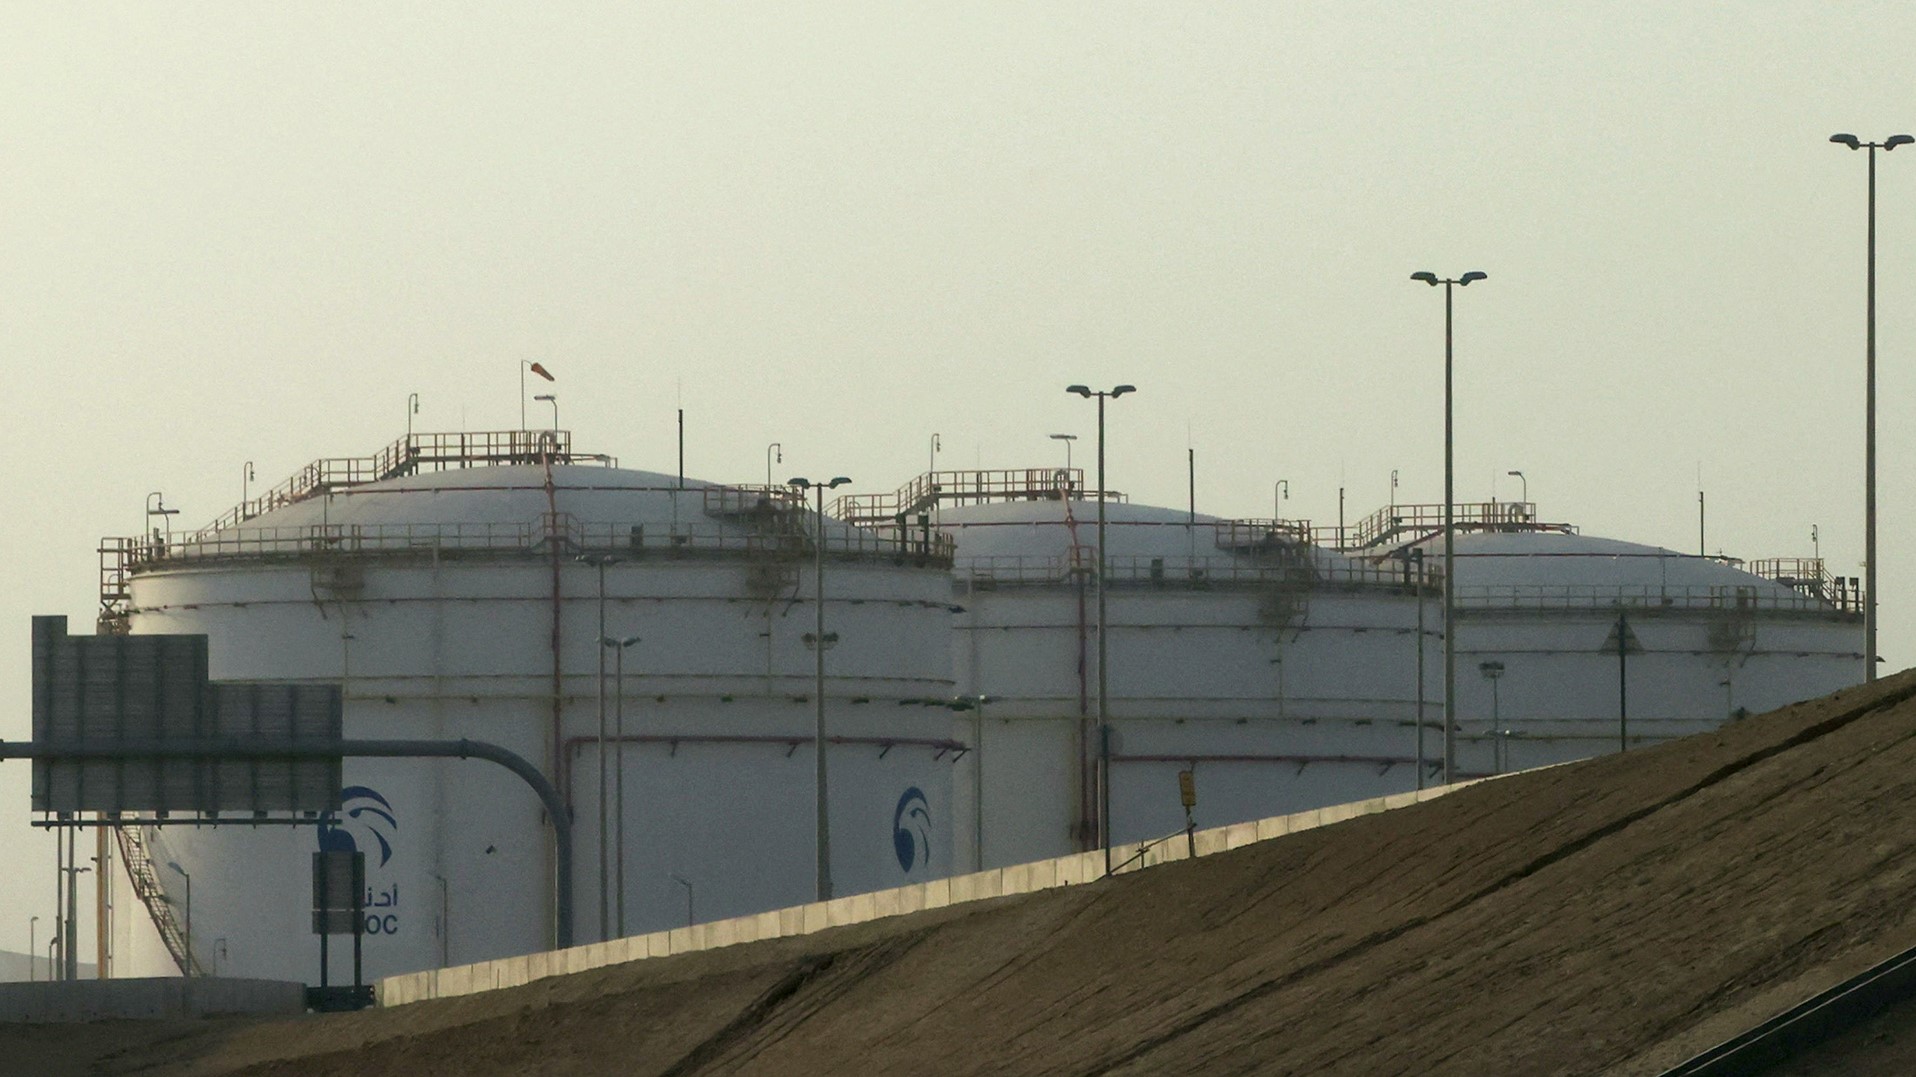 منشأة تخزين لشركة أدنوك النفطية في منطقة مصفح الصناعية بالعاصمة الإماراتية أبوظبي في 17 يناير 2022